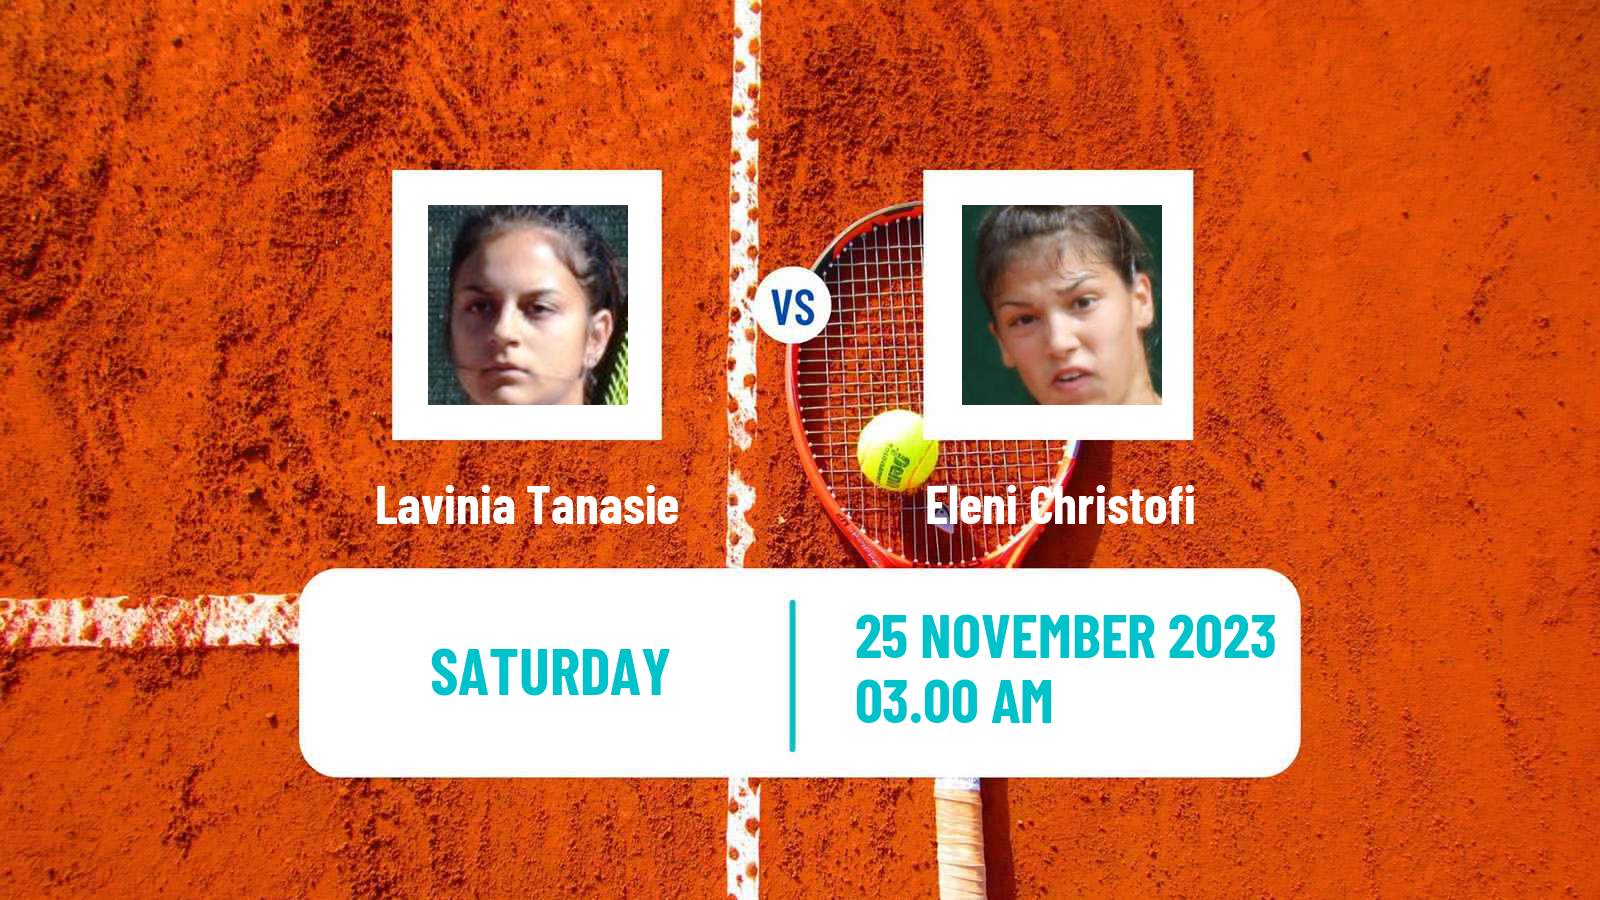 Tennis ITF W15 Heraklion 4 Women Lavinia Tanasie - Eleni Christofi